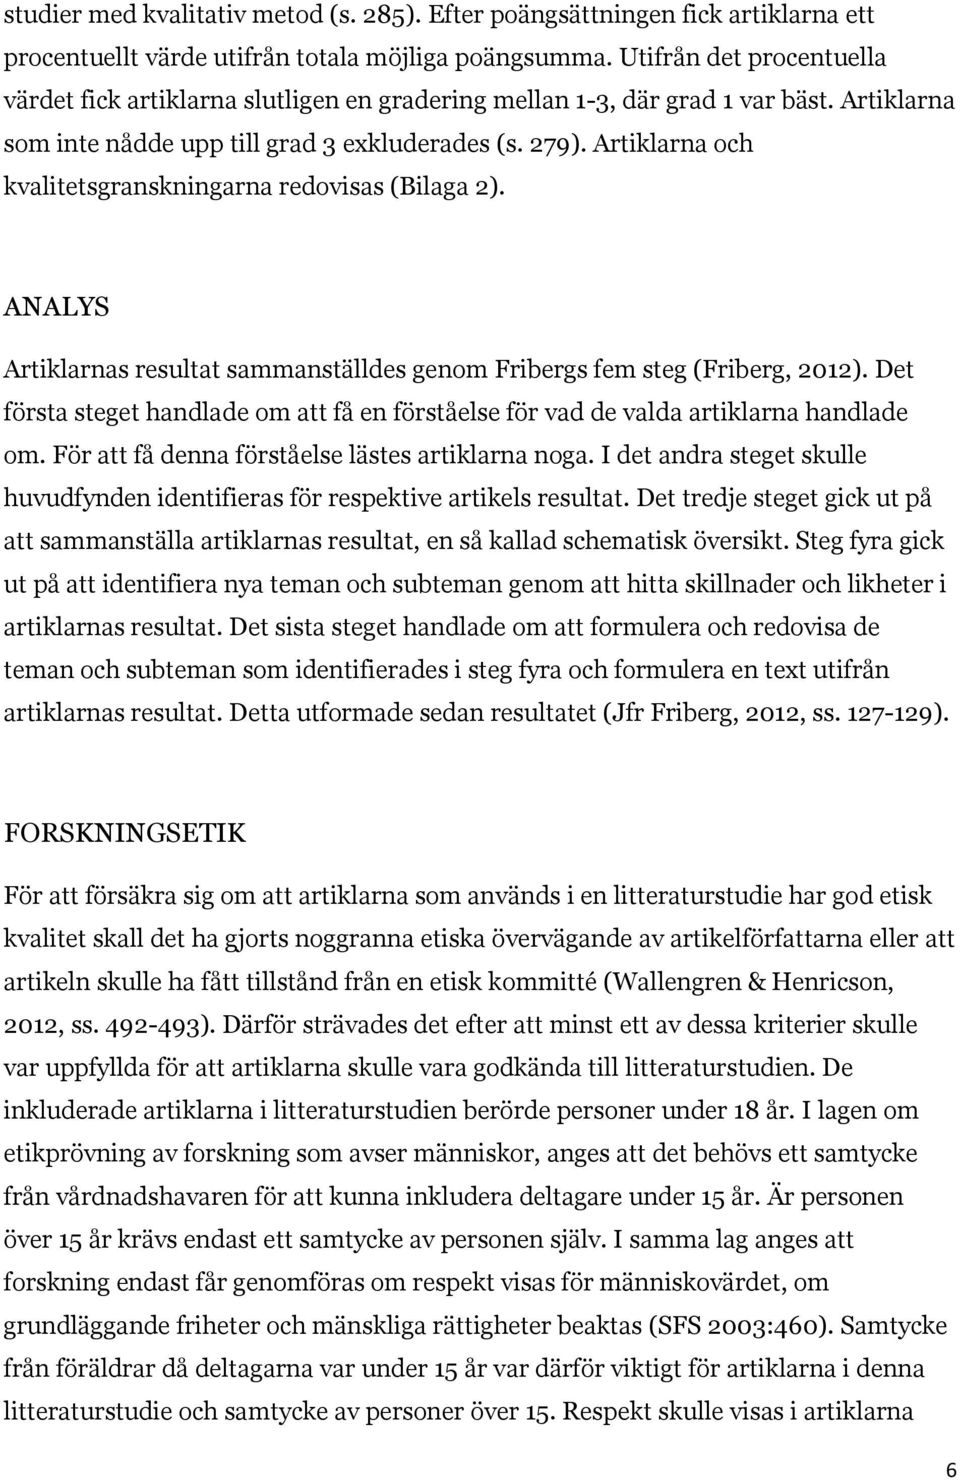 Artiklarna och kvalitetsgranskningarna redovisas (Bilaga 2). ANALYS Artiklarnas resultat sammanställdes genom Fribergs fem steg (Friberg, 2012).